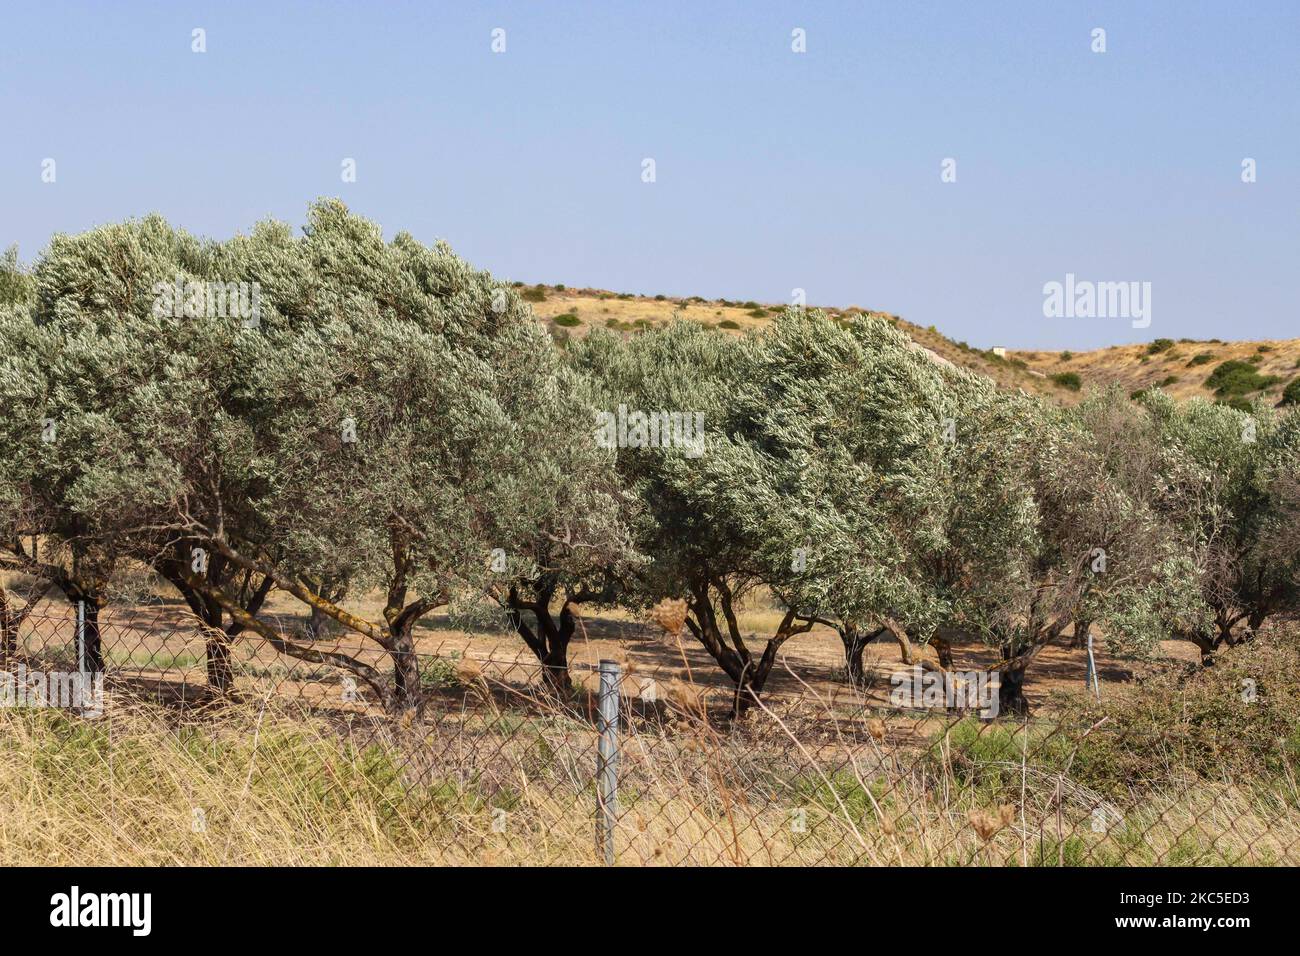 Une oliveraie clôturée à Attika en Grèce près de l'aéroport international d'Athènes ATH. La plantation d'oliviers en rangées se trouve sur une colline, une pente avec un terrain calcaire. L'huile d'olive et les olives sont l'un des ingrédients de base de la cuisine méditerranéenne. La région méditerranéenne produit 95% de la production mondiale selon l'Organisation pour l'alimentation et l'agriculture, contribuant au PIB et à l'économie de chaque pays, les 3 principaux pays sont l'Espagne, la Grèce et l'Italie. Attika, Grèce sur 11 octobre 2020 (photo de Nicolas Economou/NurPhoto) Banque D'Images